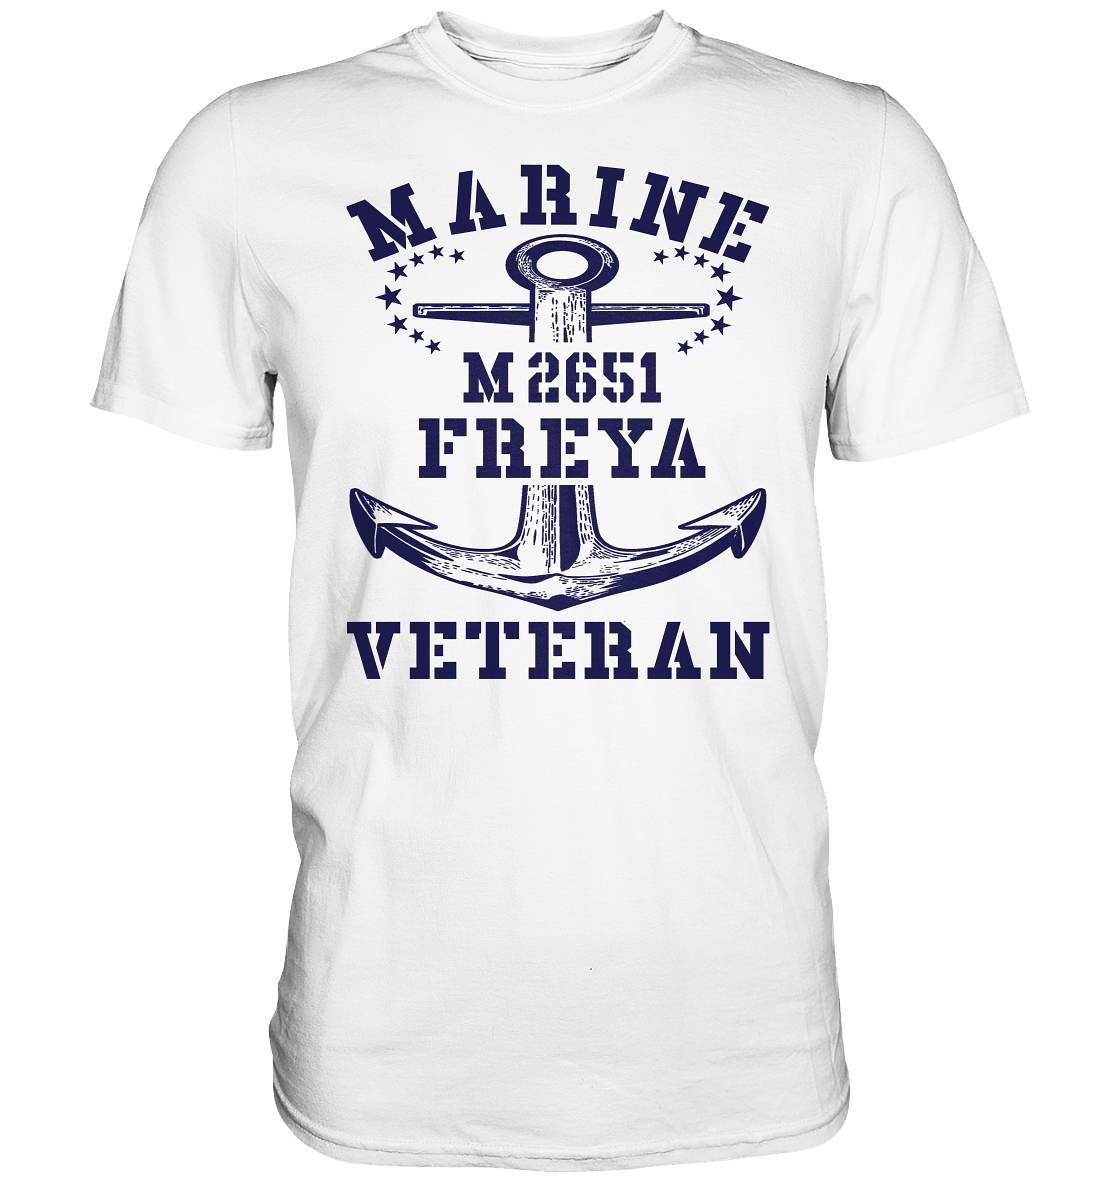 BiMi M2651 FREYA Marine Veteran - Premium Shirt